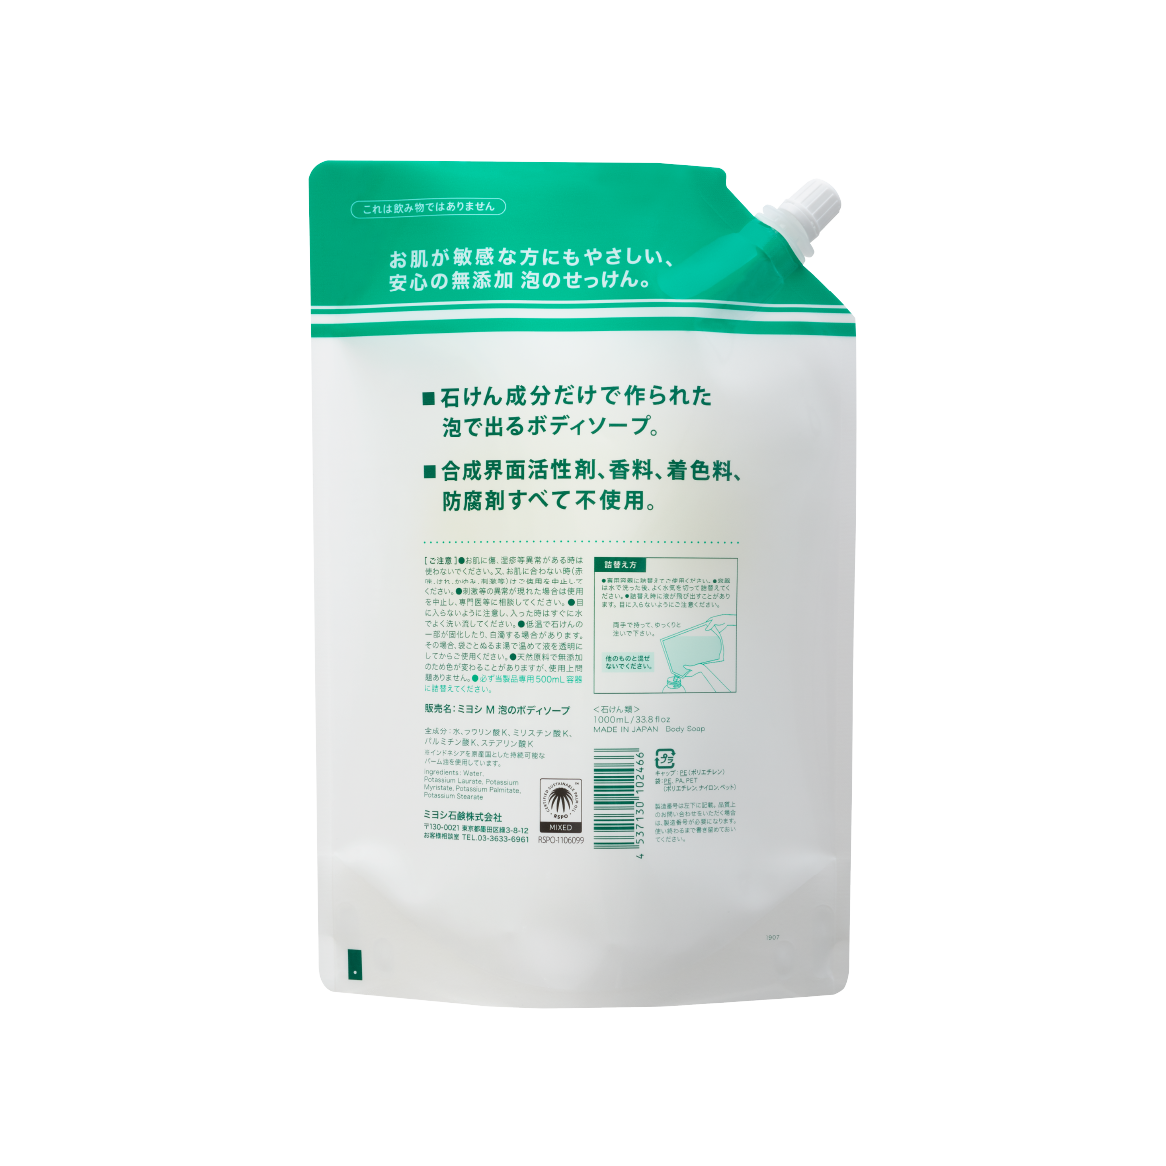 無添加せっけん泡のボディソープ スパウト1L - MIYOSHI SOAP CORPORATION